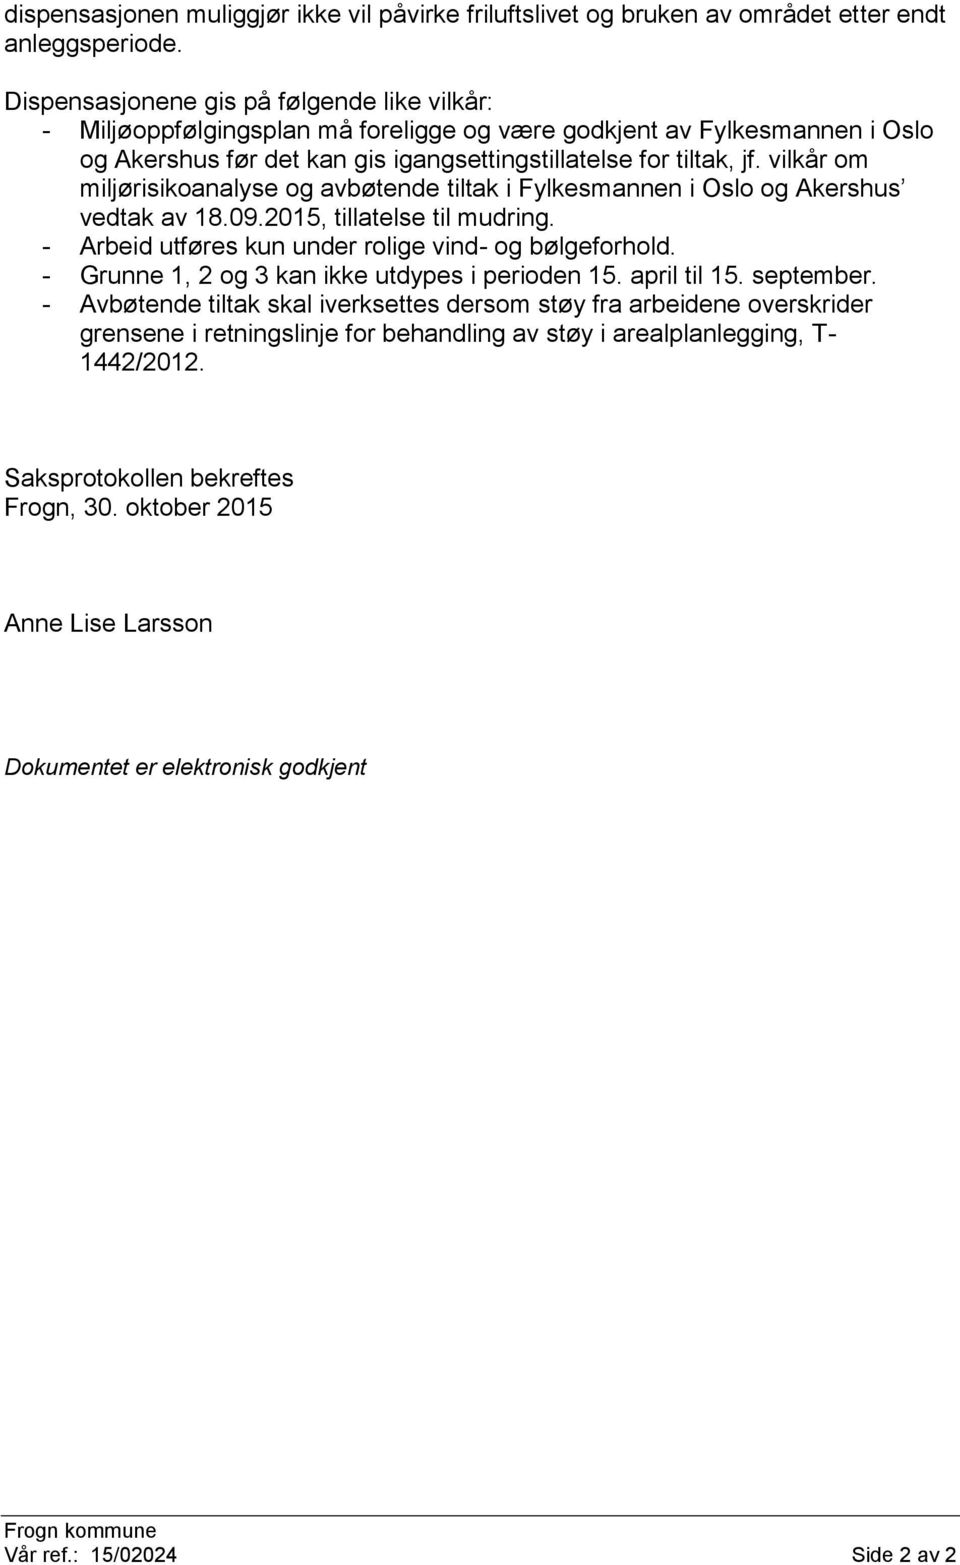 vilkår om miljørisikoanalyse og avbøtende tiltak i Fylkesmannen i Oslo og Akershus vedtak av 18.09.2015, tillatelse til mudring. - Arbeid utføres kun under rolige vind- og bølgeforhold.